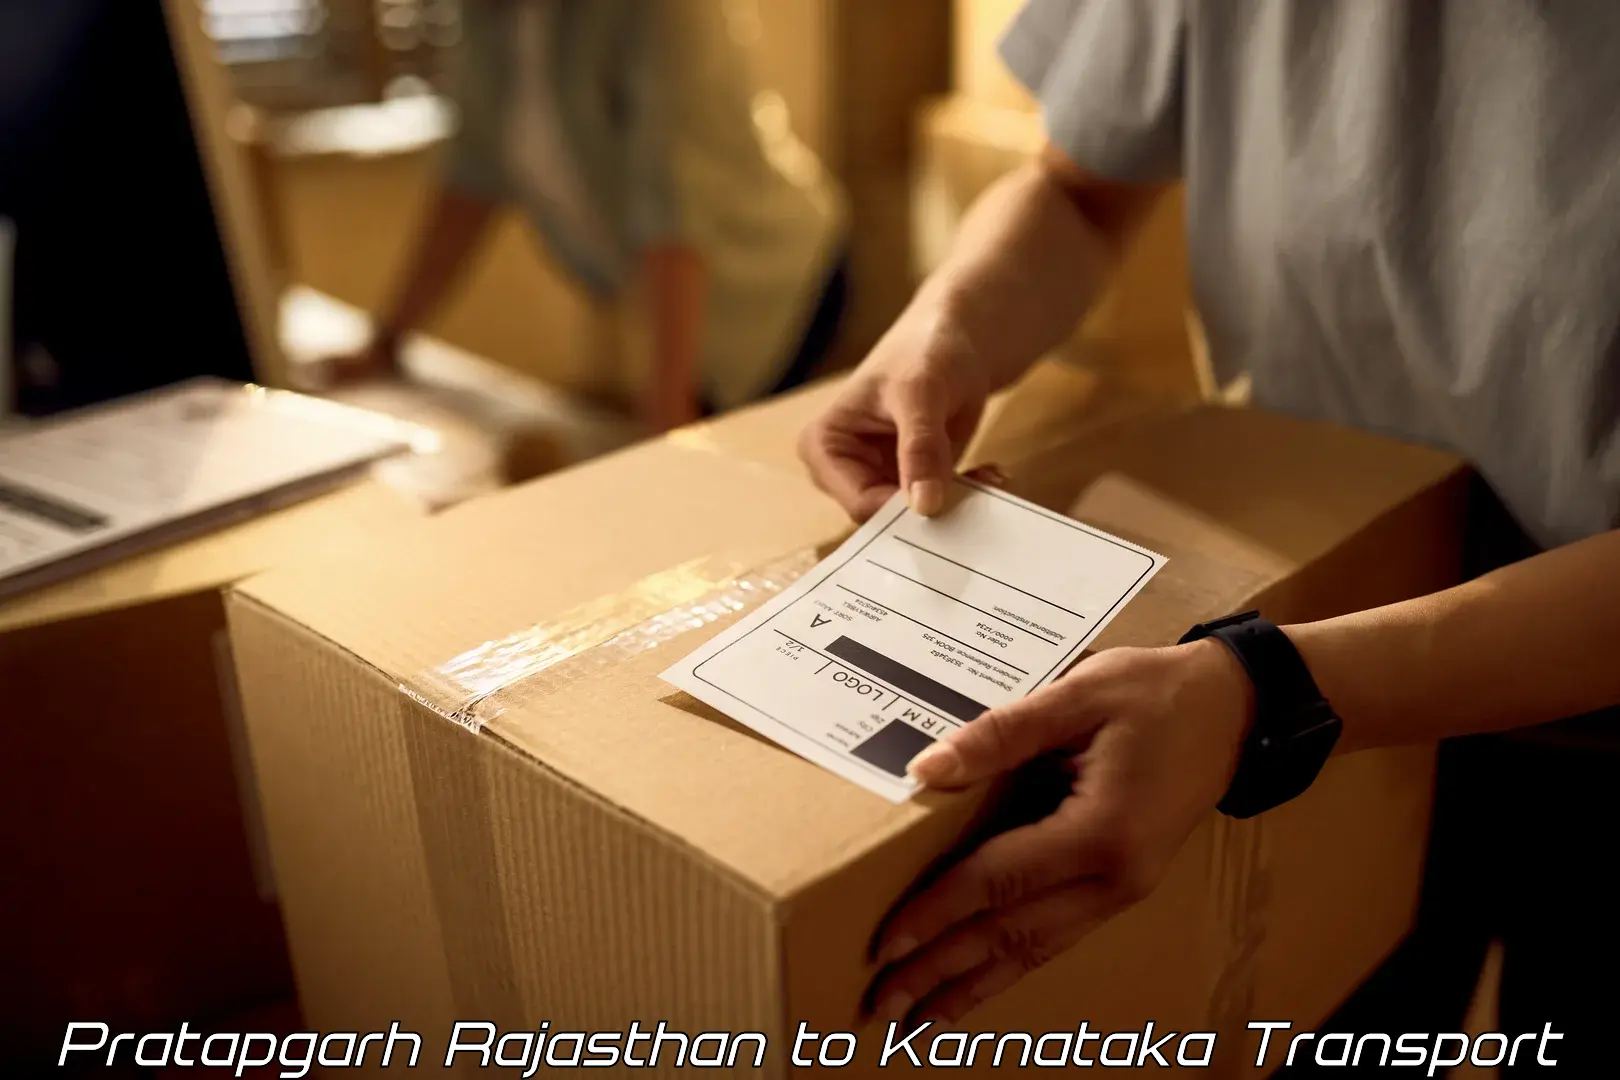 Daily transport service Pratapgarh Rajasthan to Ramanathapura